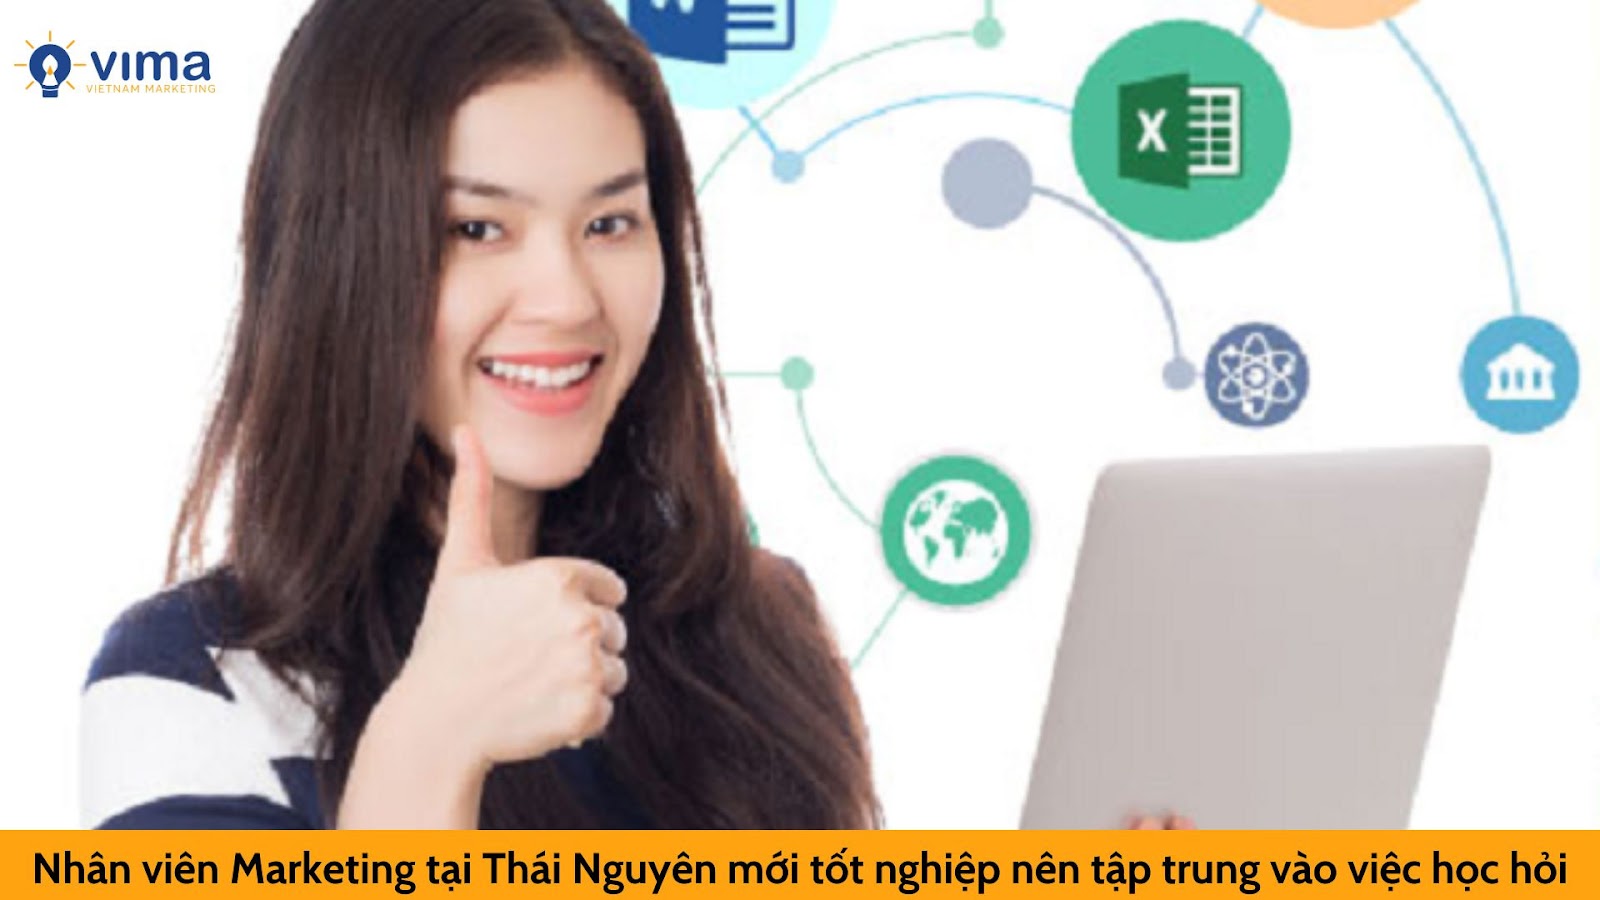 Nhân viên Marketing tại Thái Nguyên mới tốt nghiệp nên tập trung vào việc học hỏi